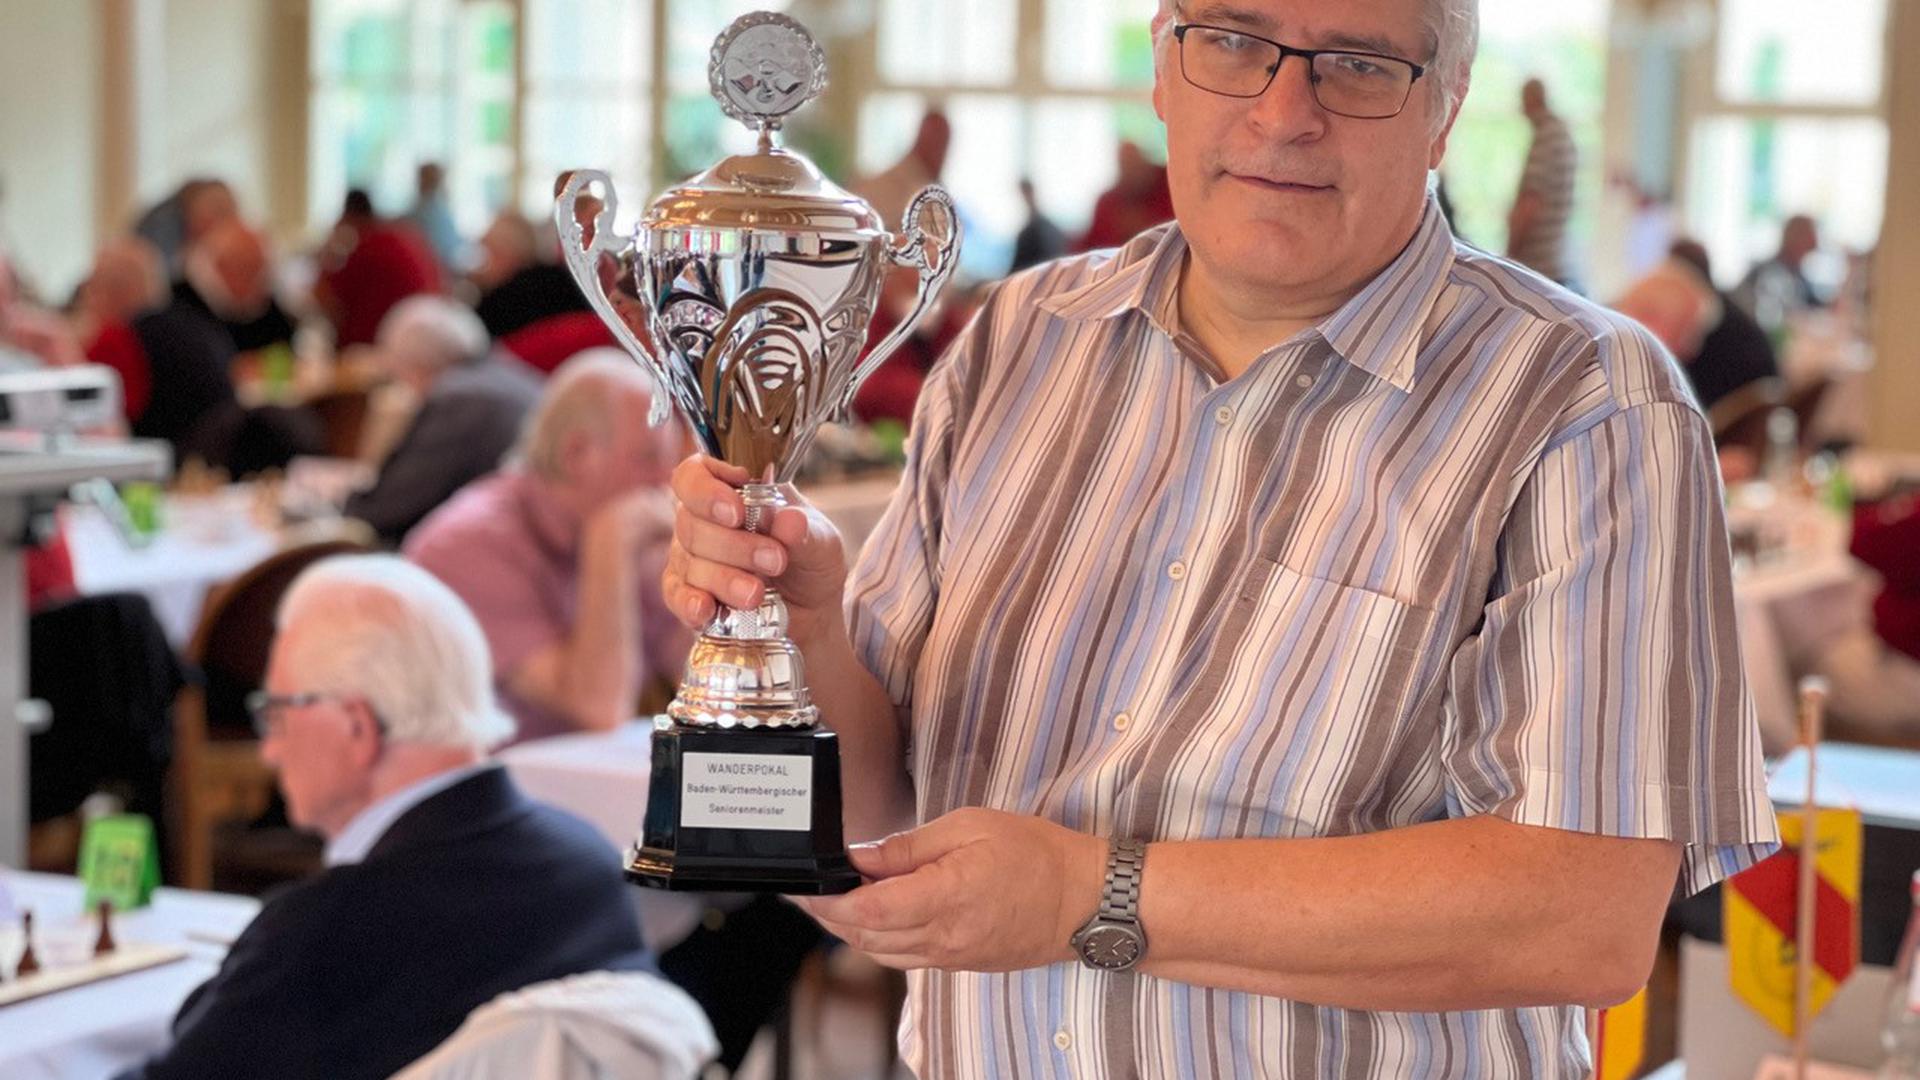 In Bad Herrenalb wird in dieser Woche ein International besetztes Schach-Turnier ausgetragen, Hauptschiedsrichter Matthias Kleifges aus Bruchsal zeigt den Pokal, den der Sieger gewinnen wird